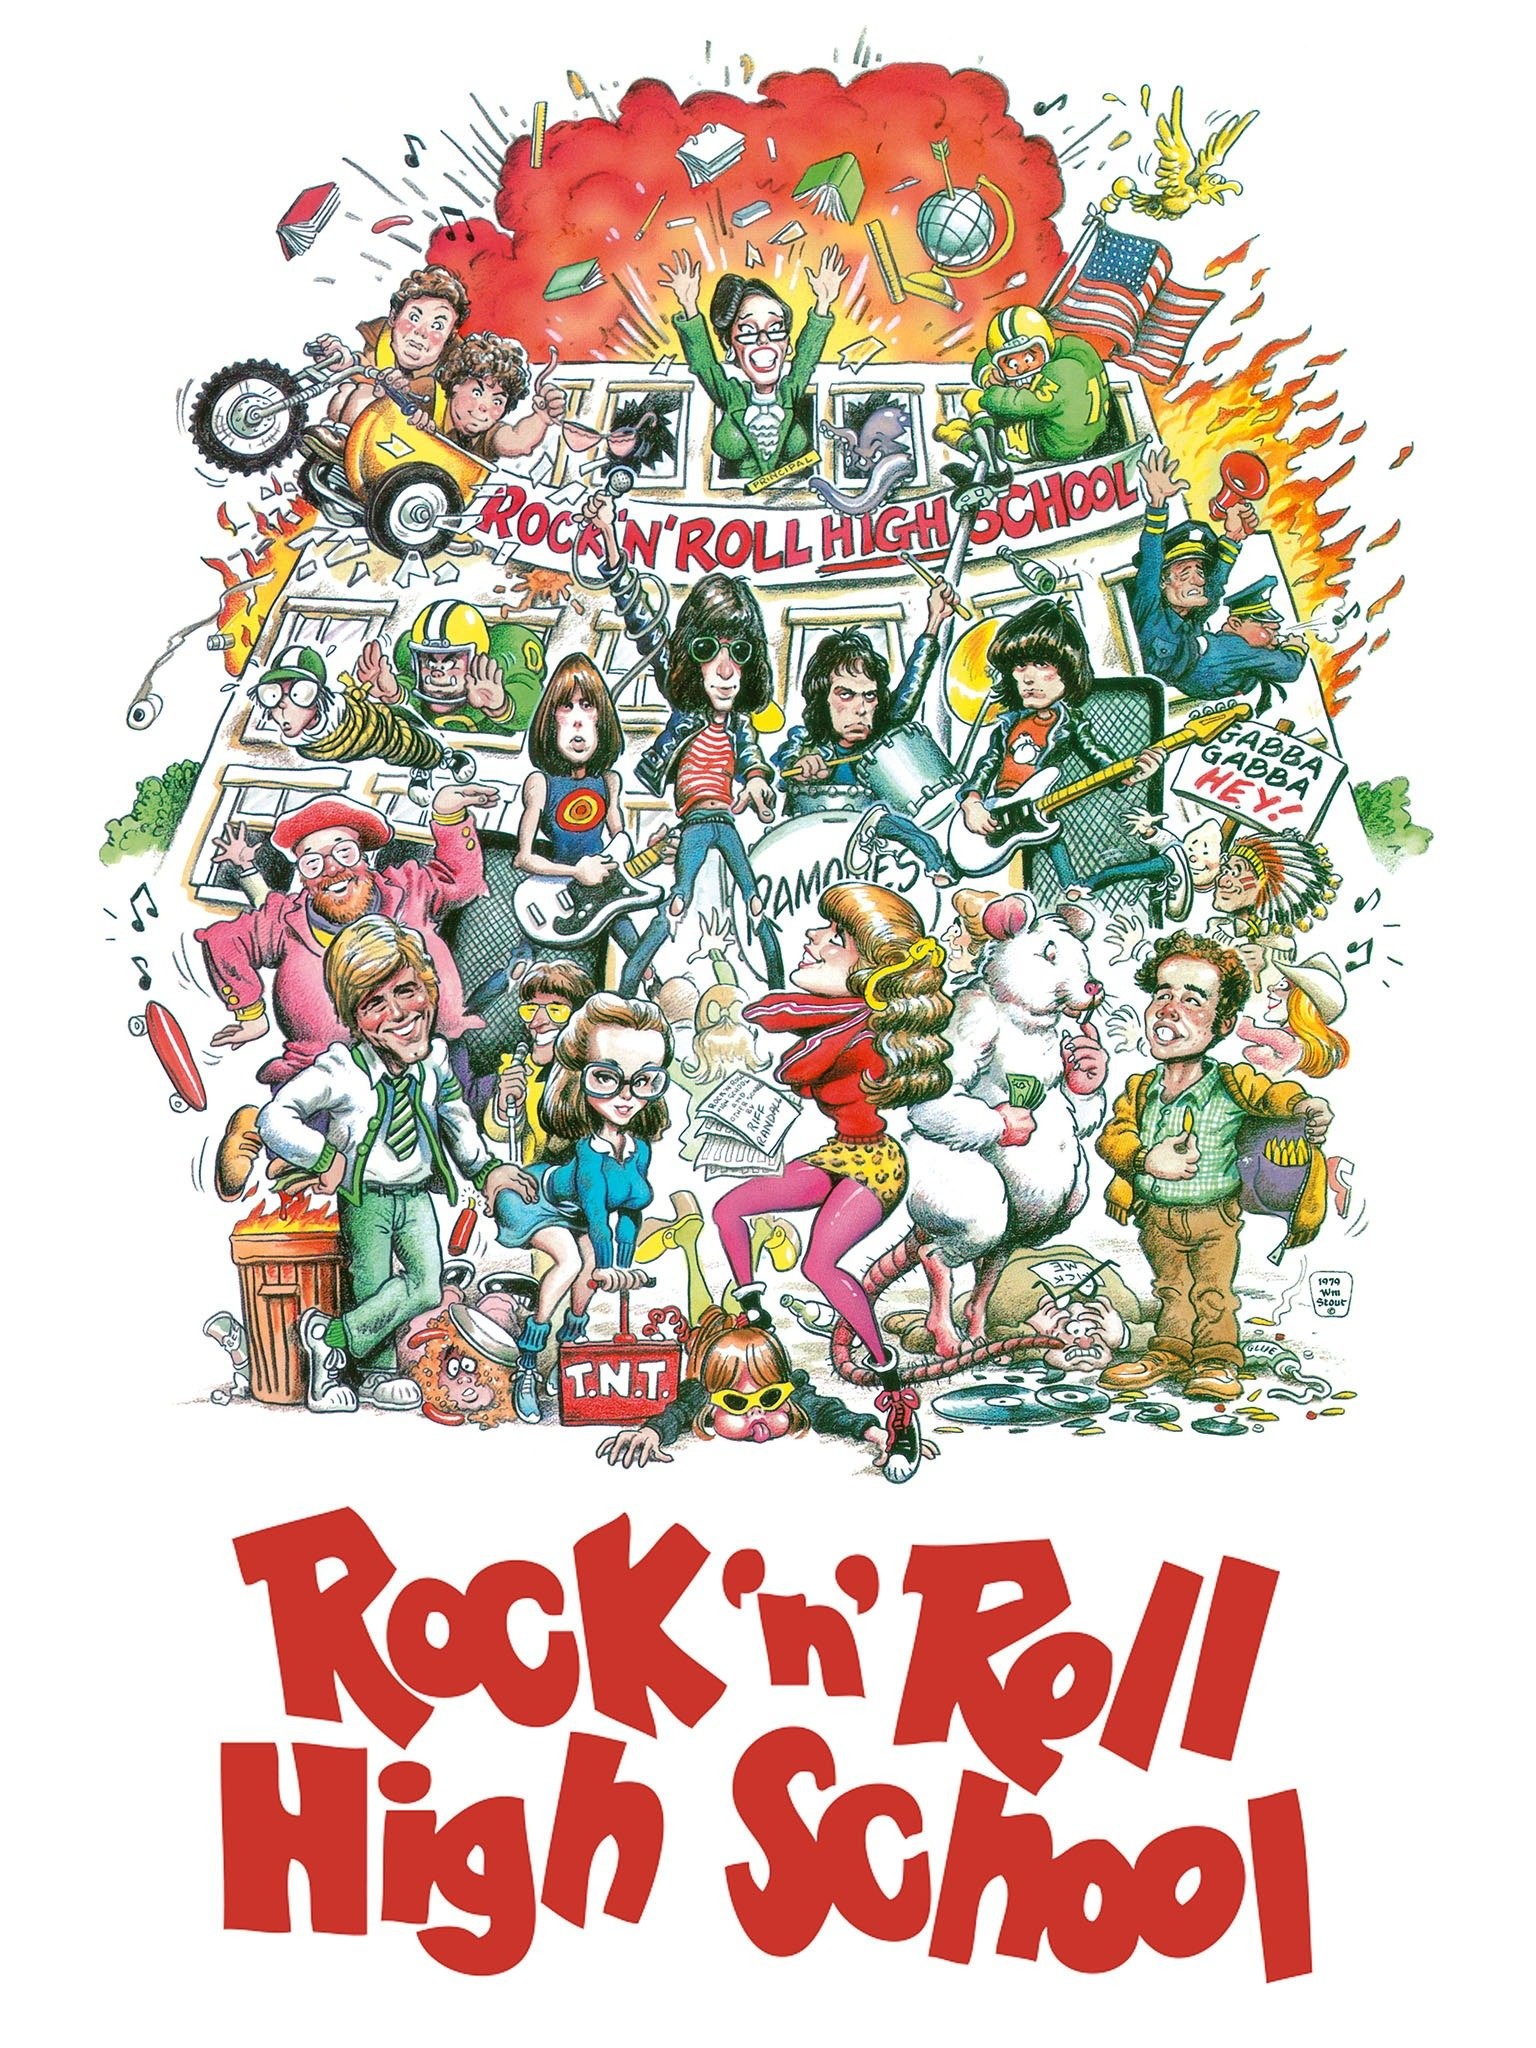 Rock'n Roll - Rotten Tomatoes